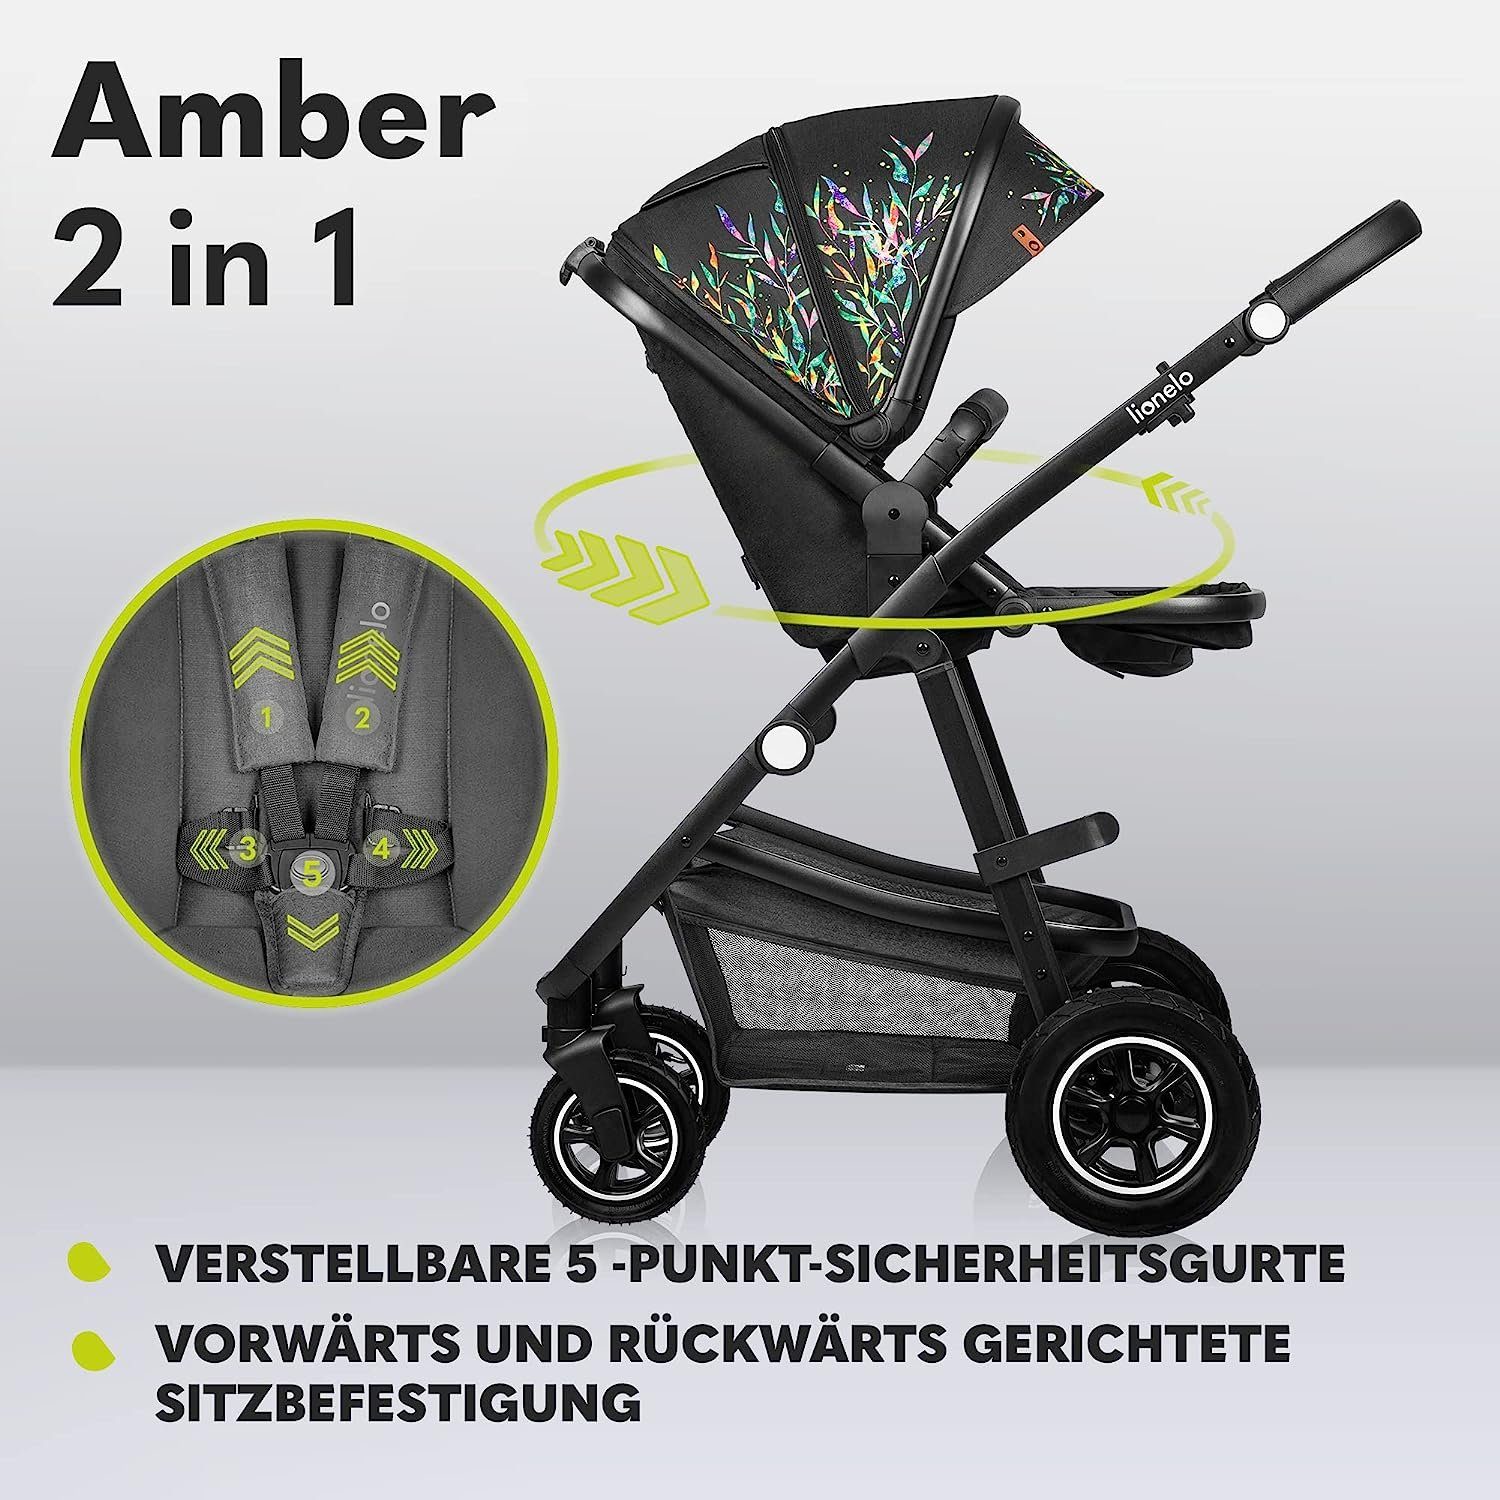 2in1 Dreamin Tasche Kombi-Kinderwagen Schutzüberzug Regenschutz Moskitonetz Amber, lionelo